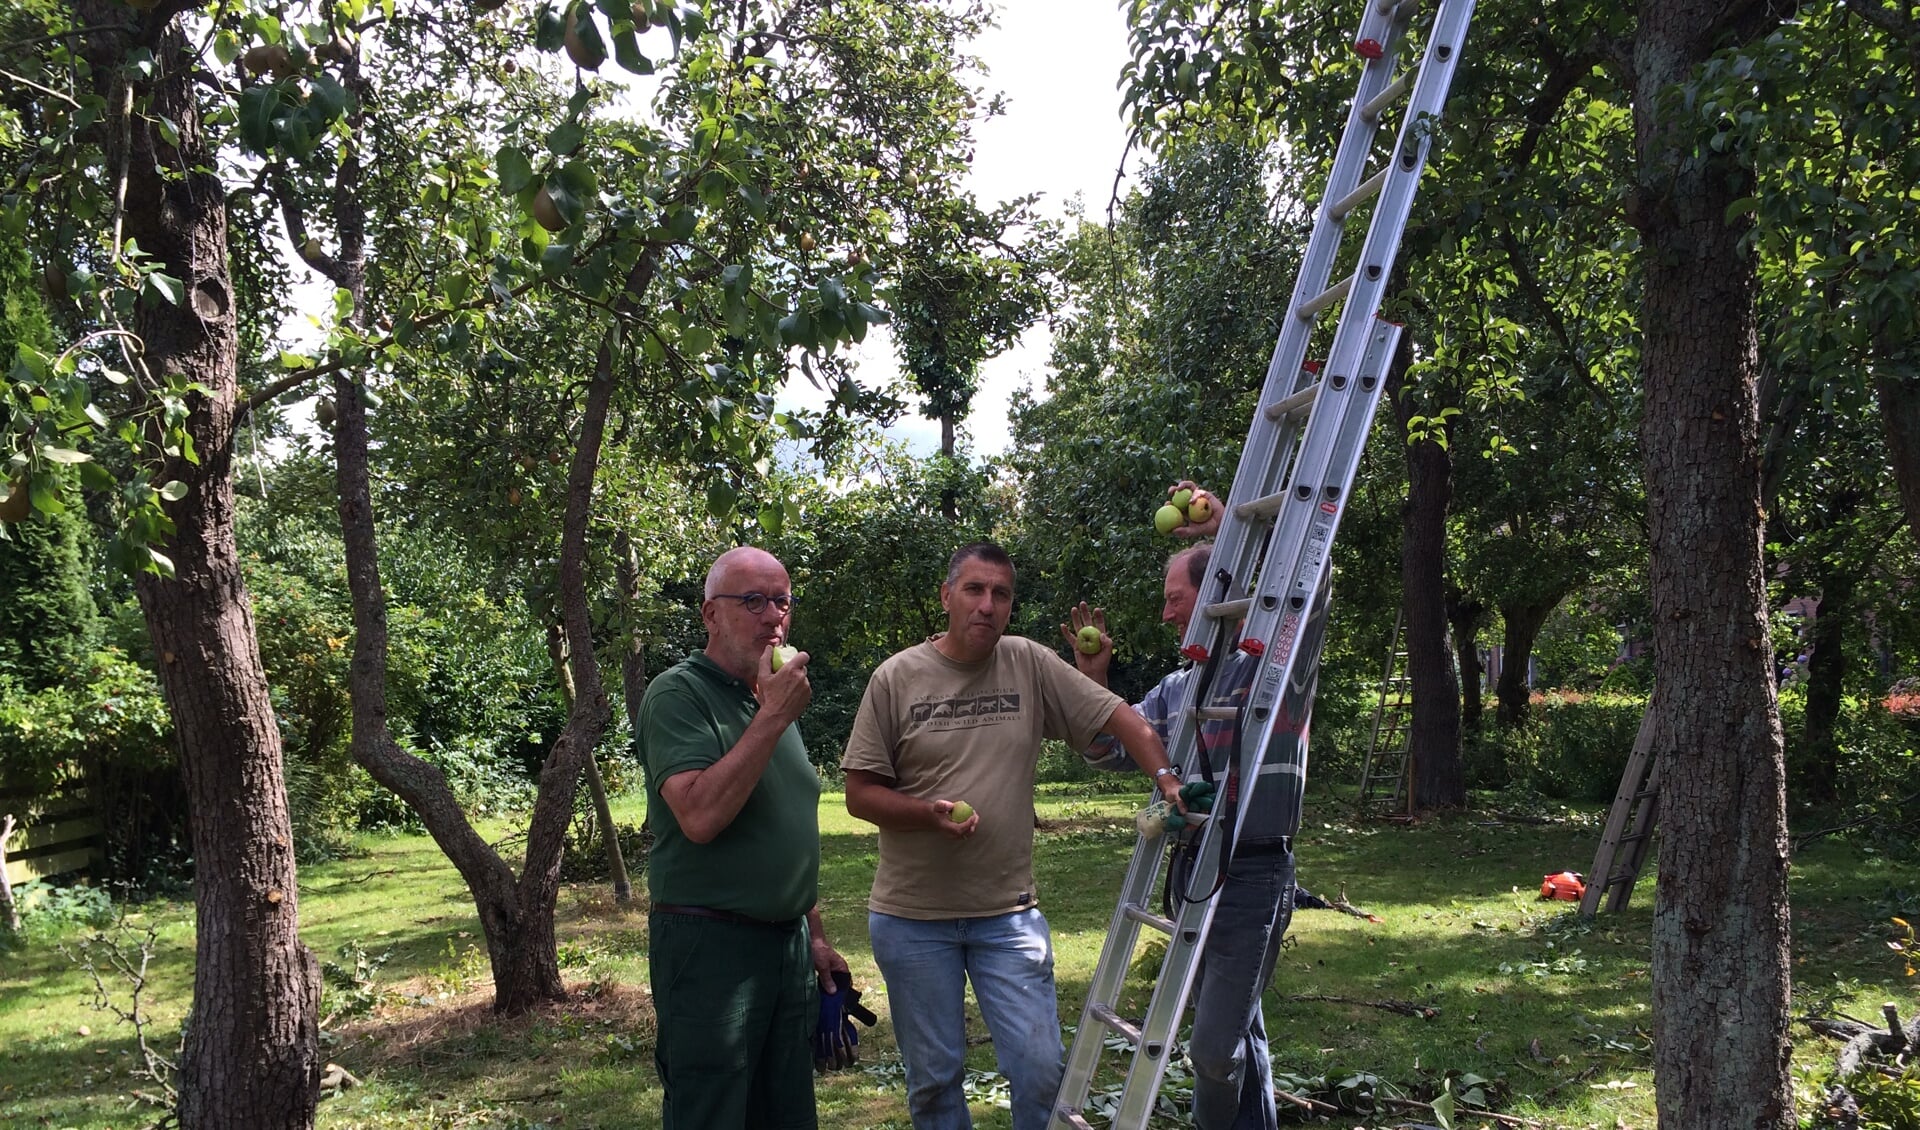 • De NVWK vraagt deelnemers om te helpen met klusjes in de boomgaard. Deelnemers gaan na afloop niet met lege handen naar huis. 